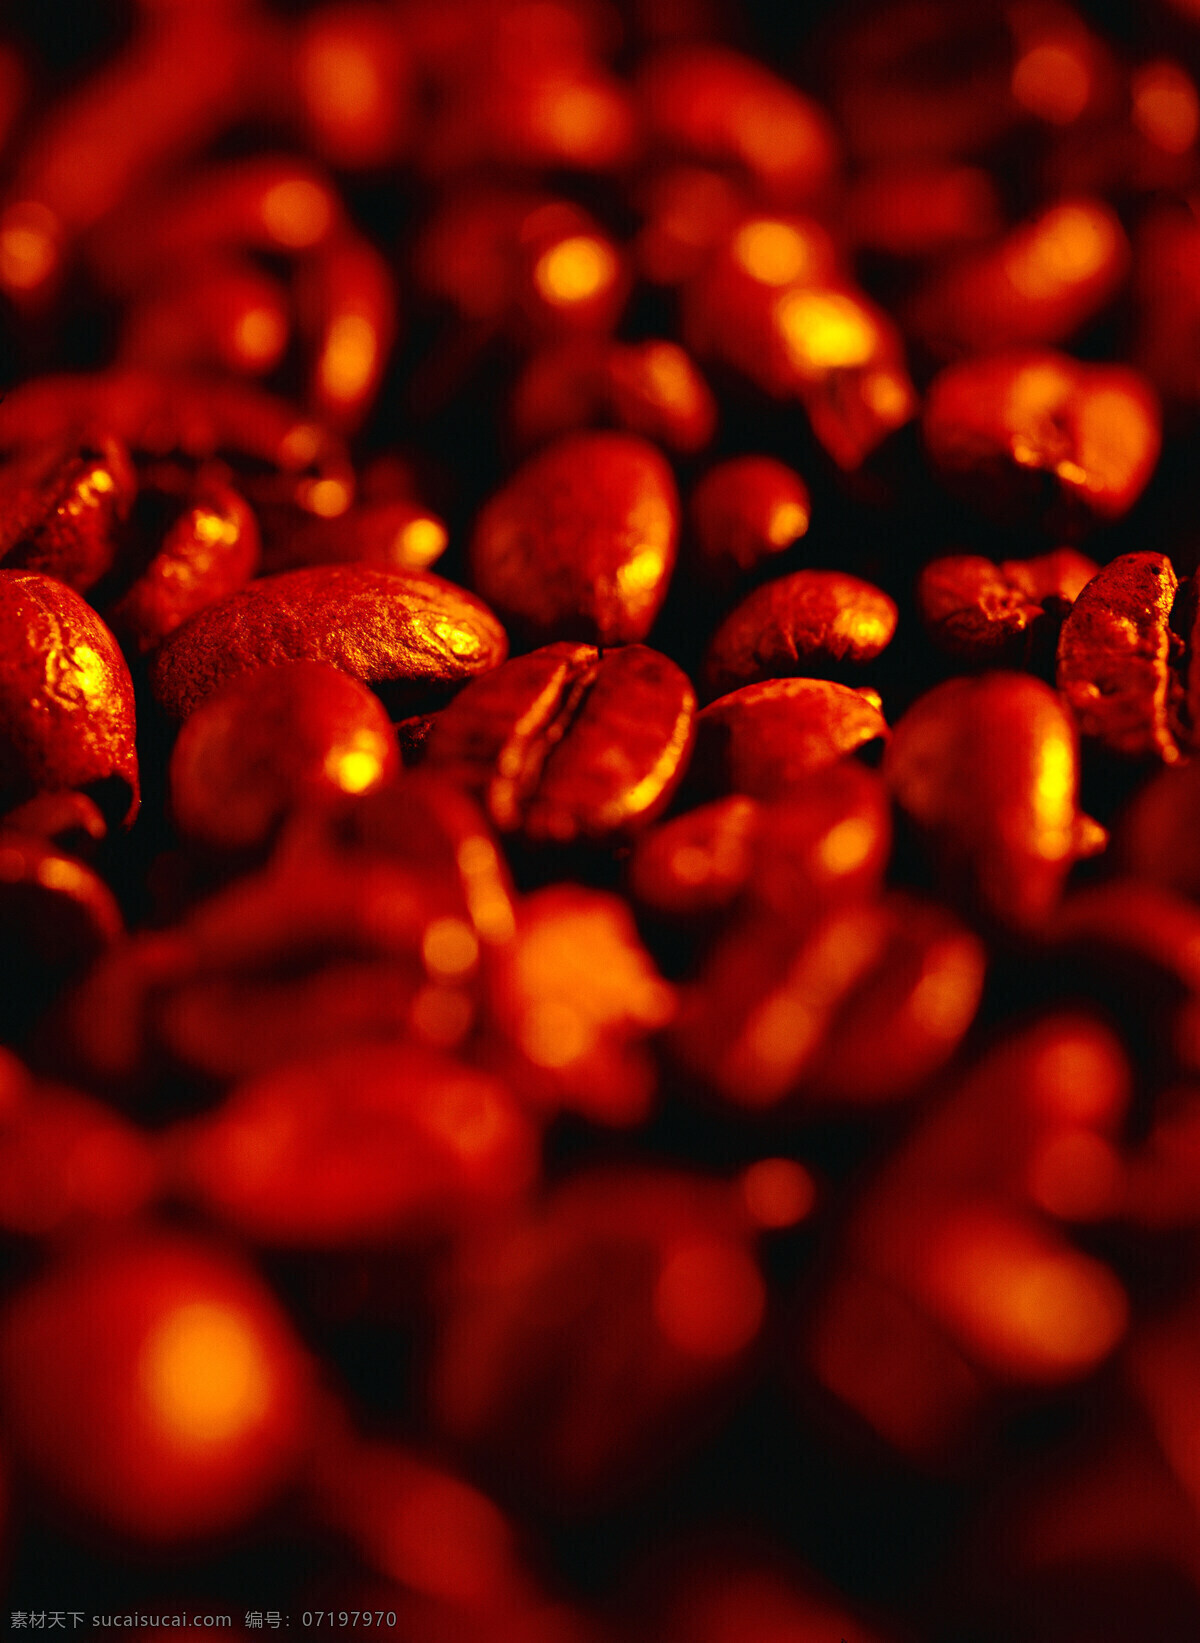 片 褐色 咖啡豆 特写 素材图片 一片咖啡豆 一堆咖啡豆 许多 很多 颗粒 褐色咖啡豆 coffee 高清图片 咖啡图片 餐饮美食